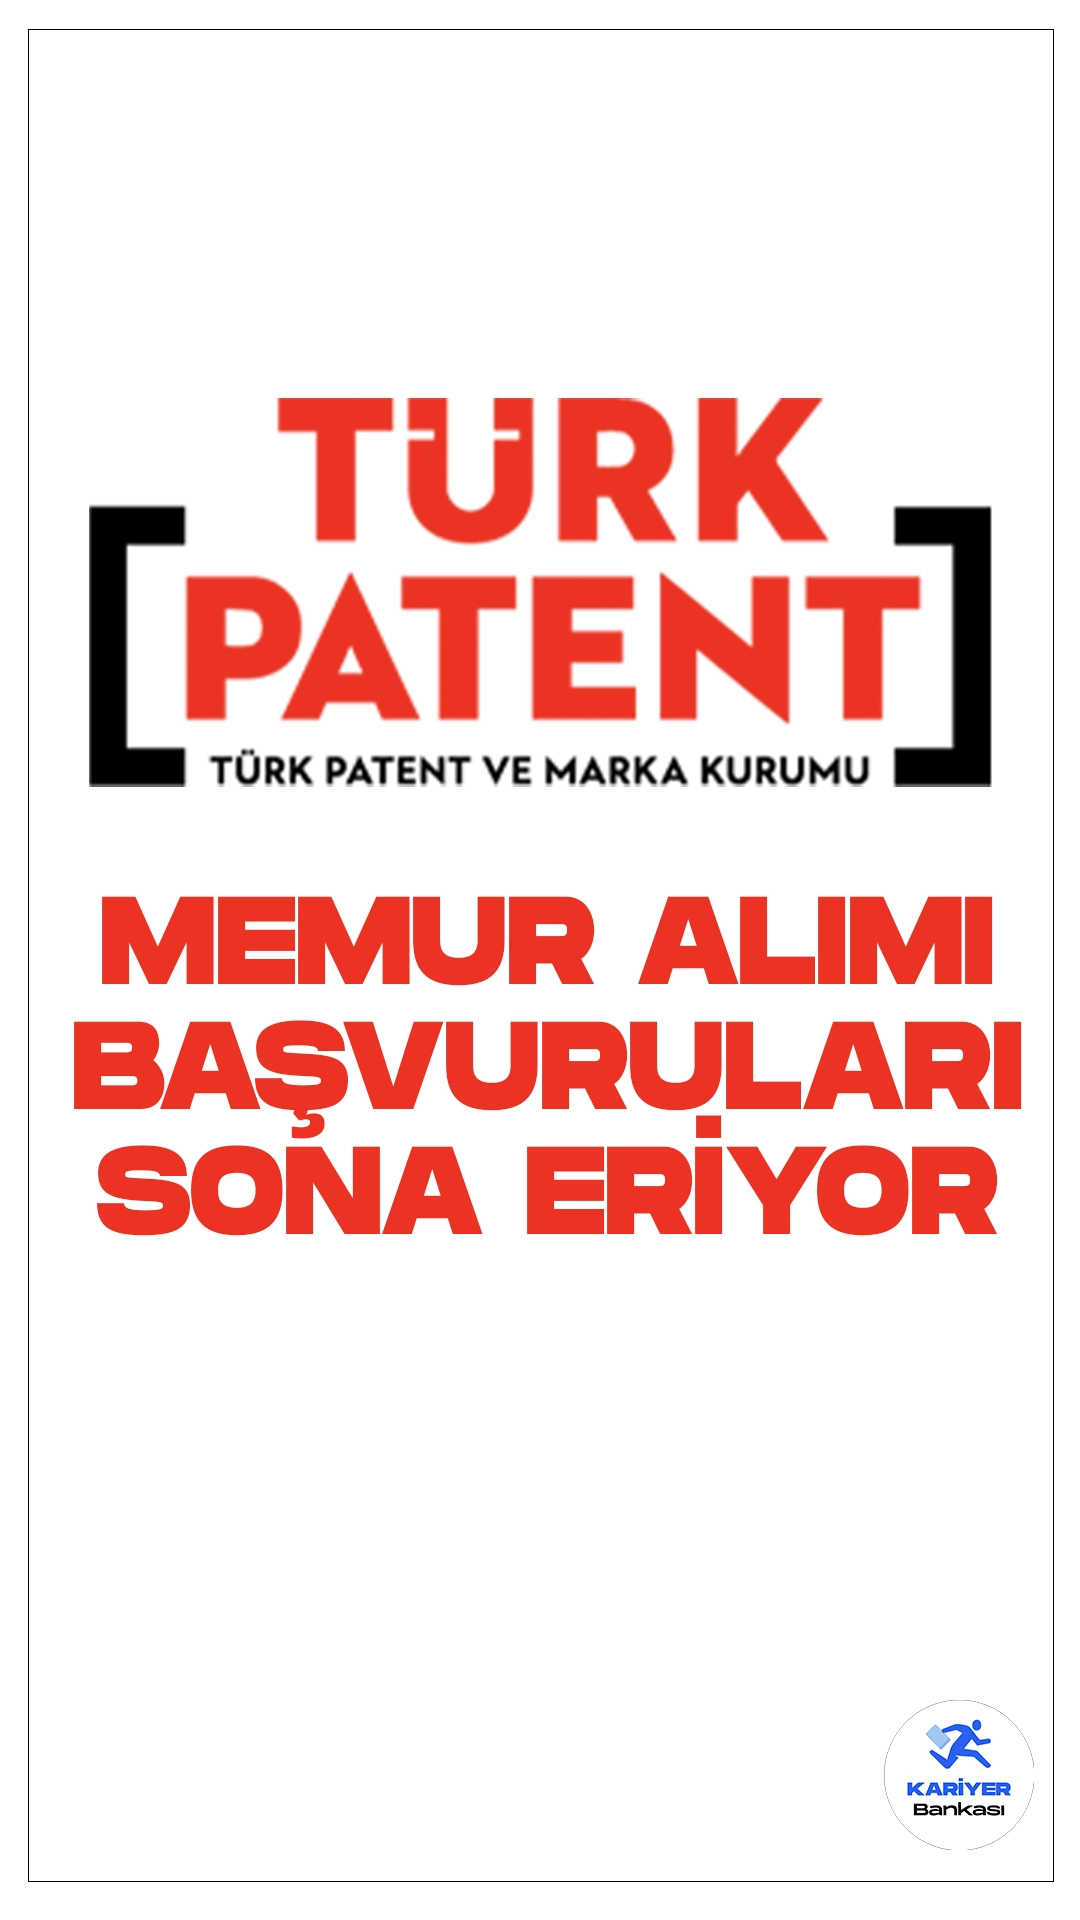 Türk Patent ve Marka Kurumu 30 Memur Alımı Sona Eriyor. Başvuru şartları ve başvuru sayfasına dair tüm detaylar haberimizde.